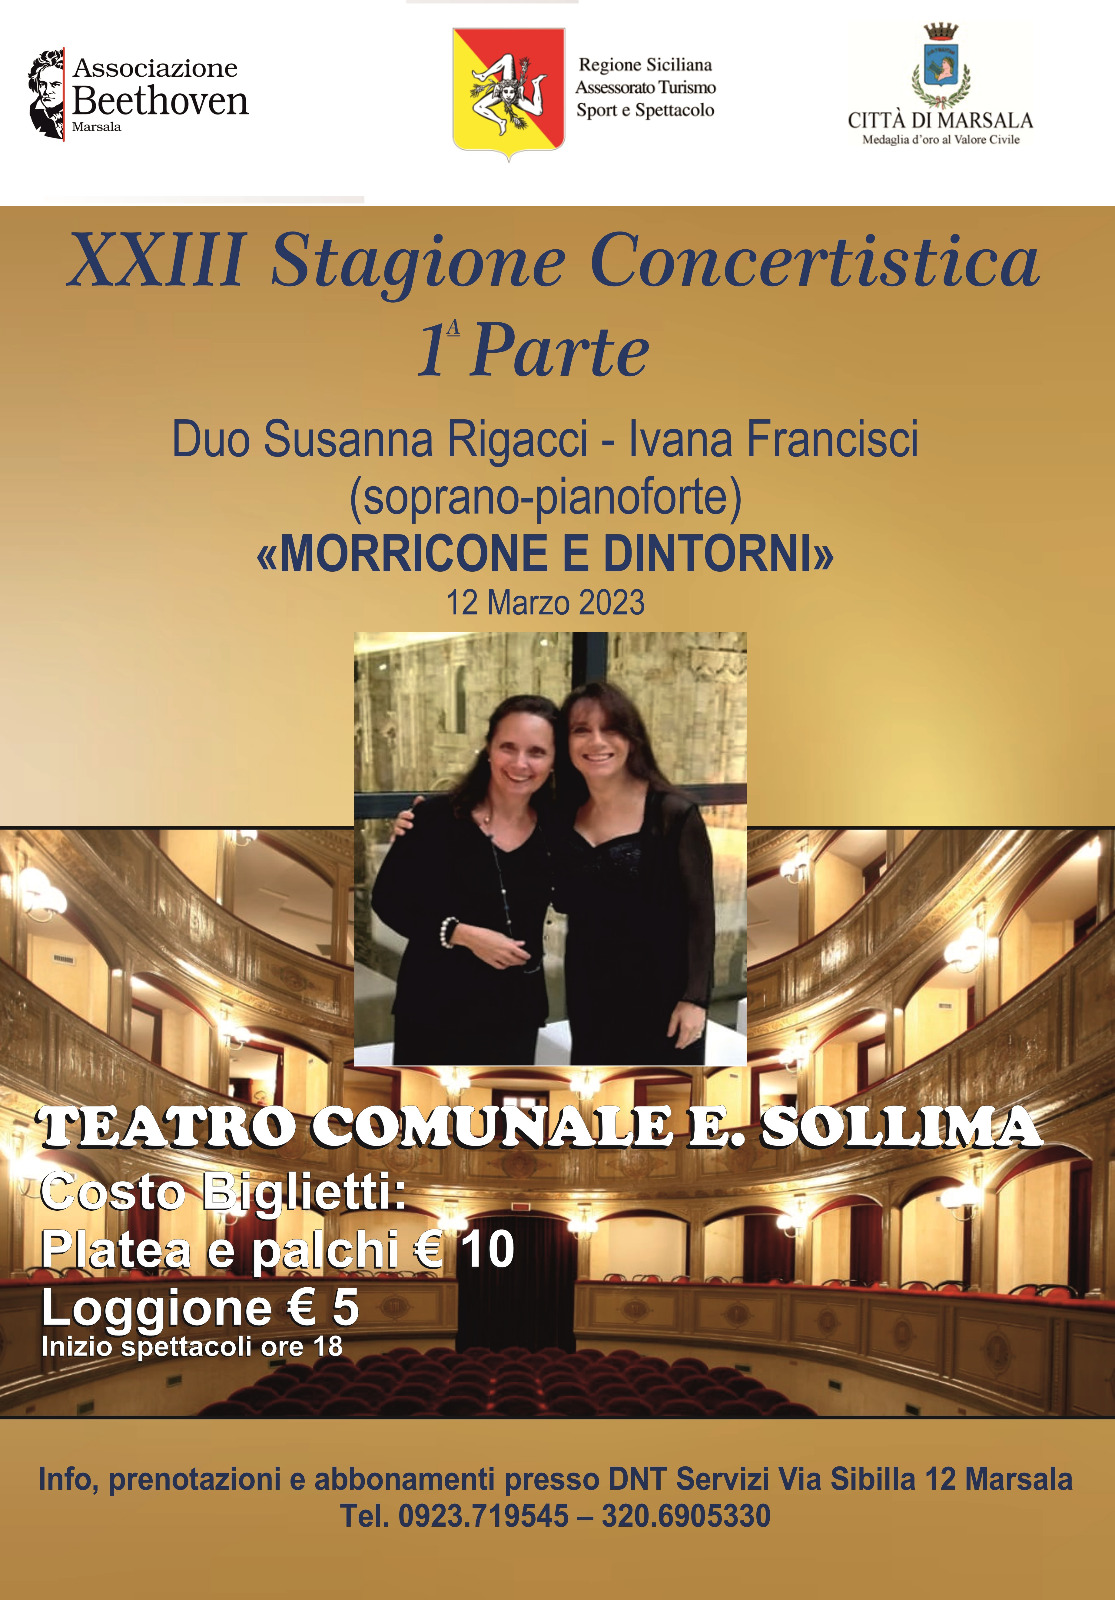 En “Sollima” de Marsala, la soprano de Morricone rendirá homenaje al Maestro